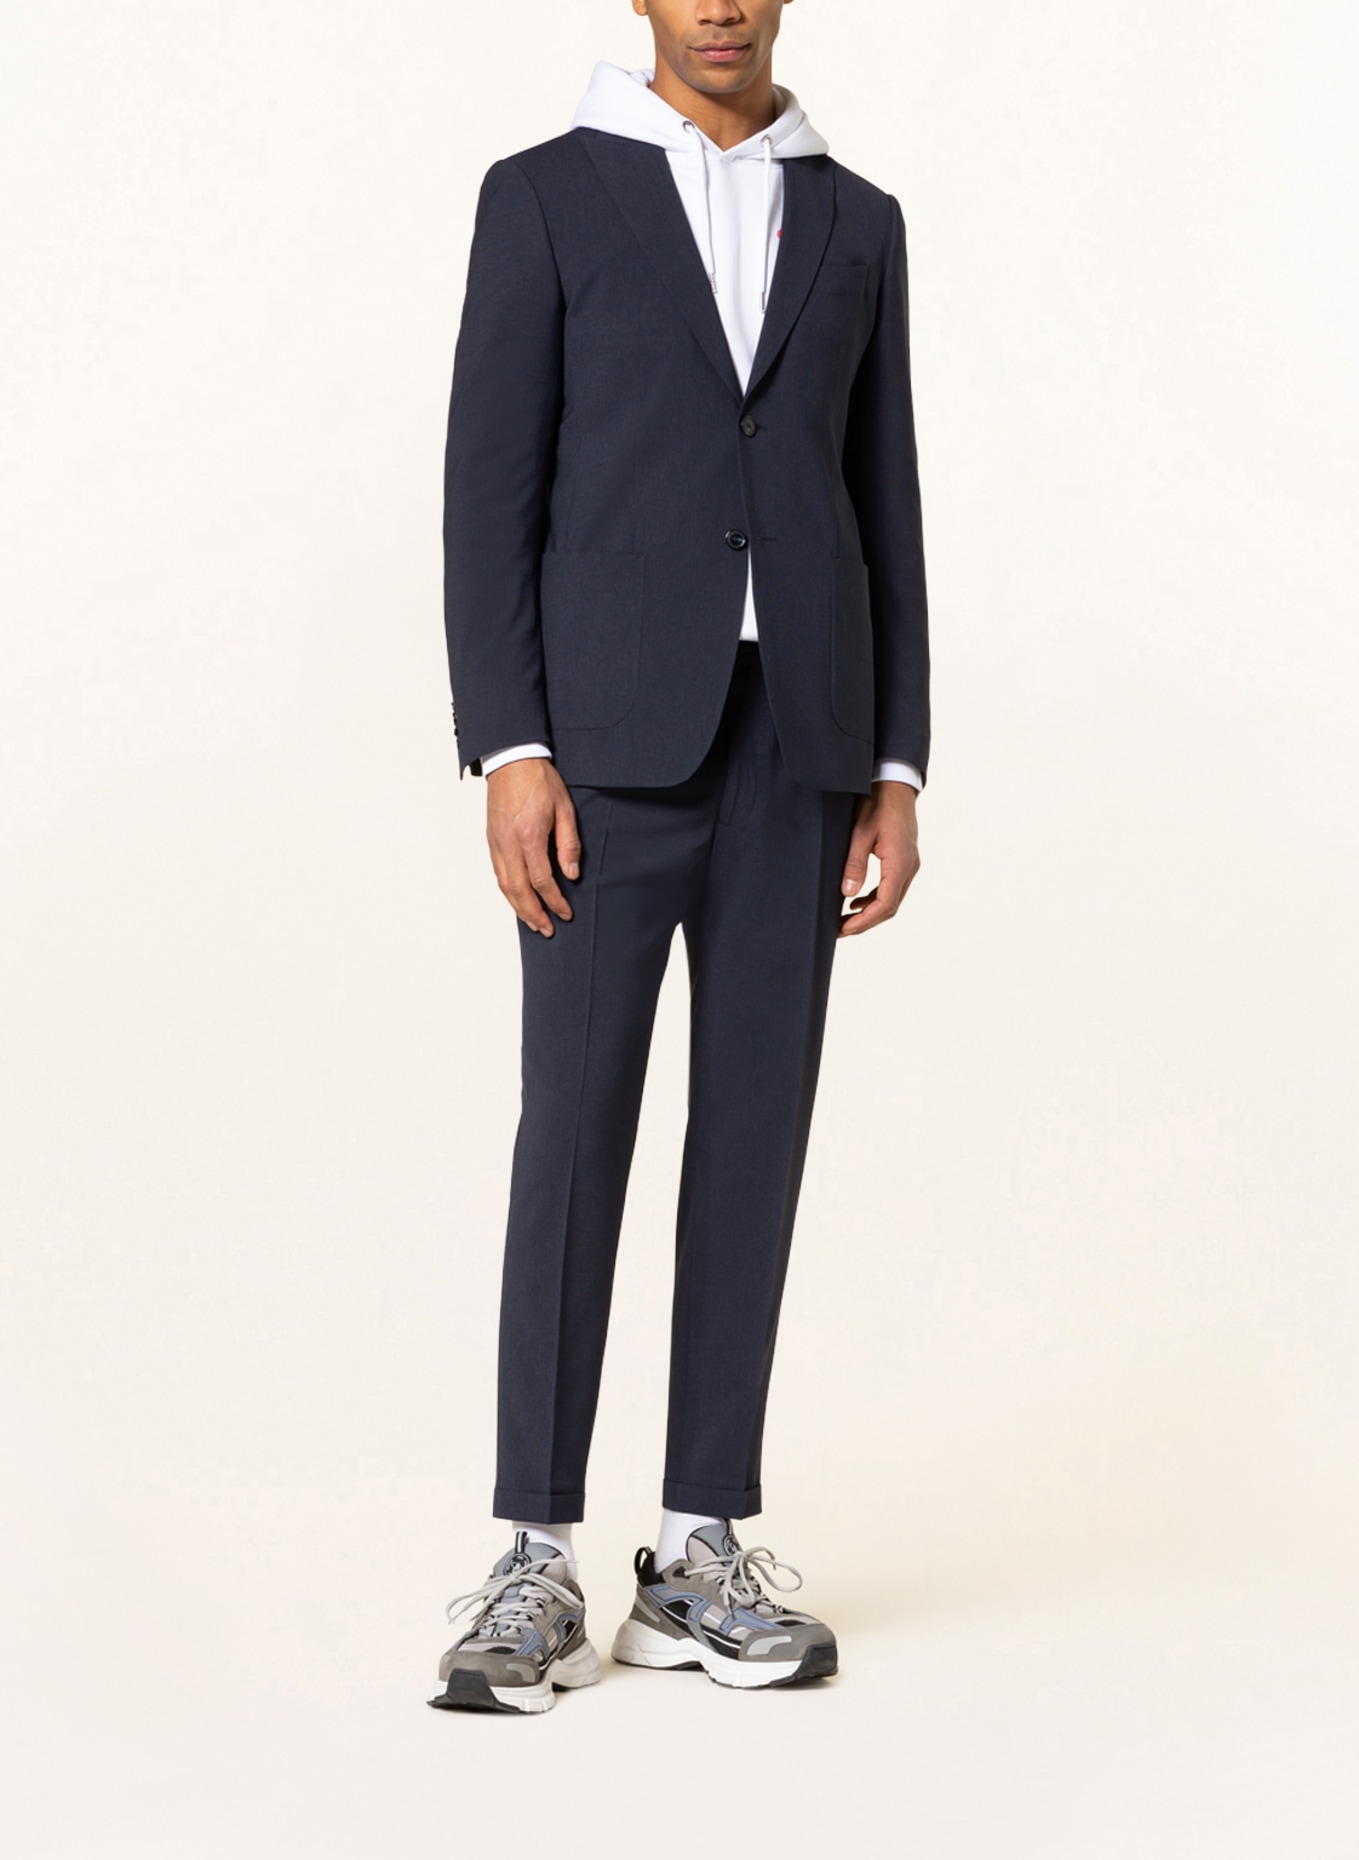 SPSR Suit jacket extra slim fit , Color: 53C3009 Houndstooth Blue (Image 2)